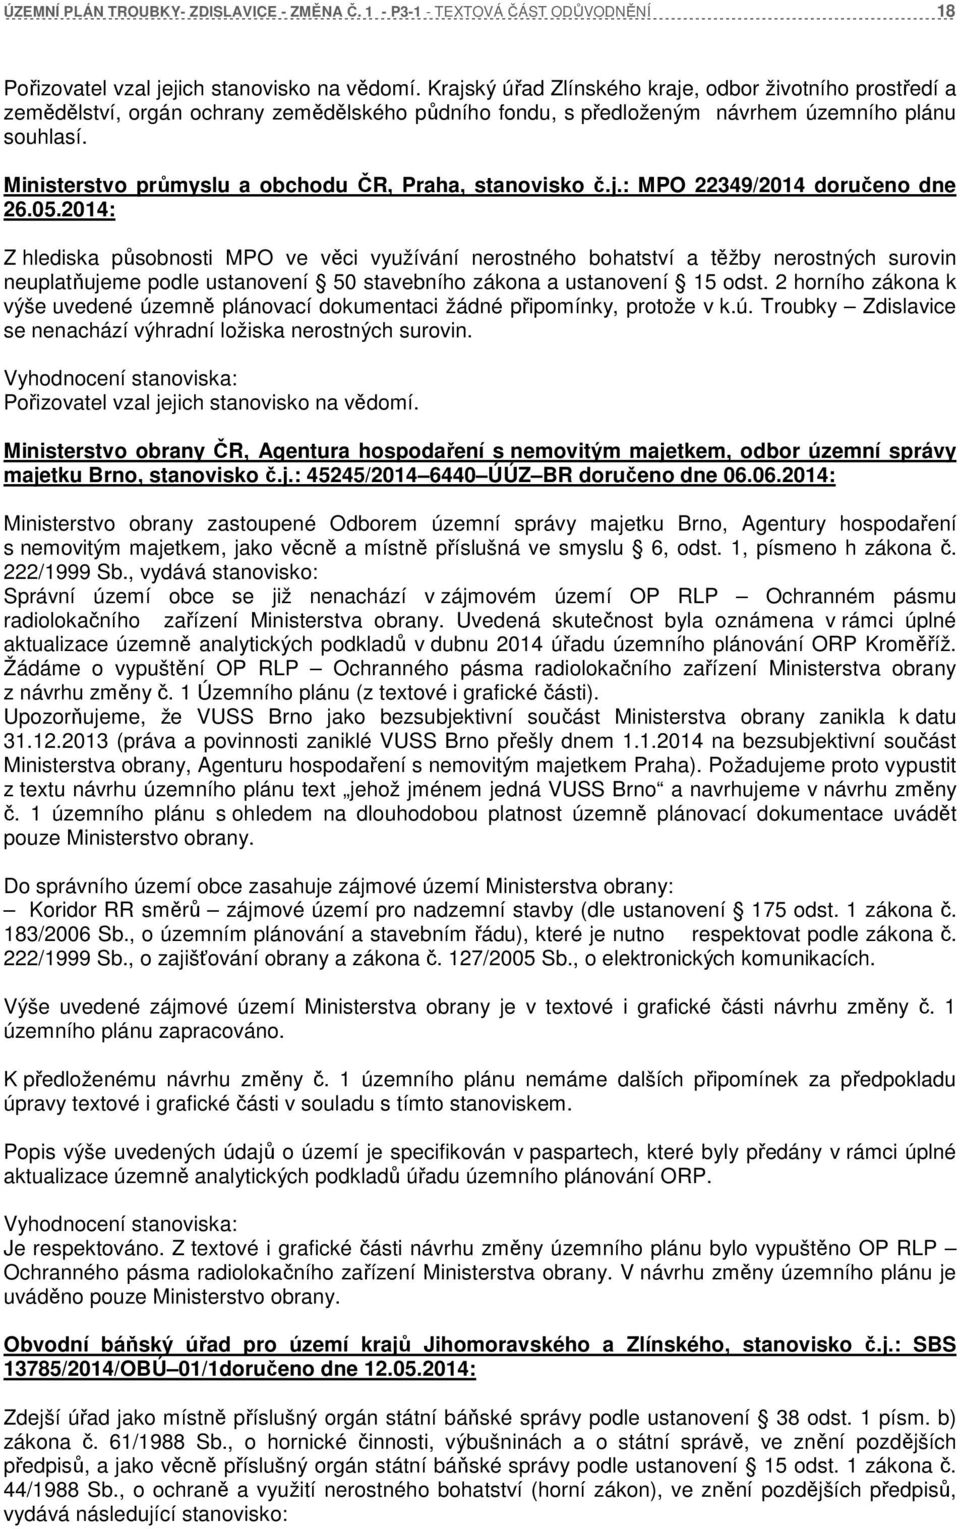 Ministerstvo průmyslu a obchodu ČR, Praha, stanovisko č.j.: MPO 22349/2014 doručeno dne 26.05.